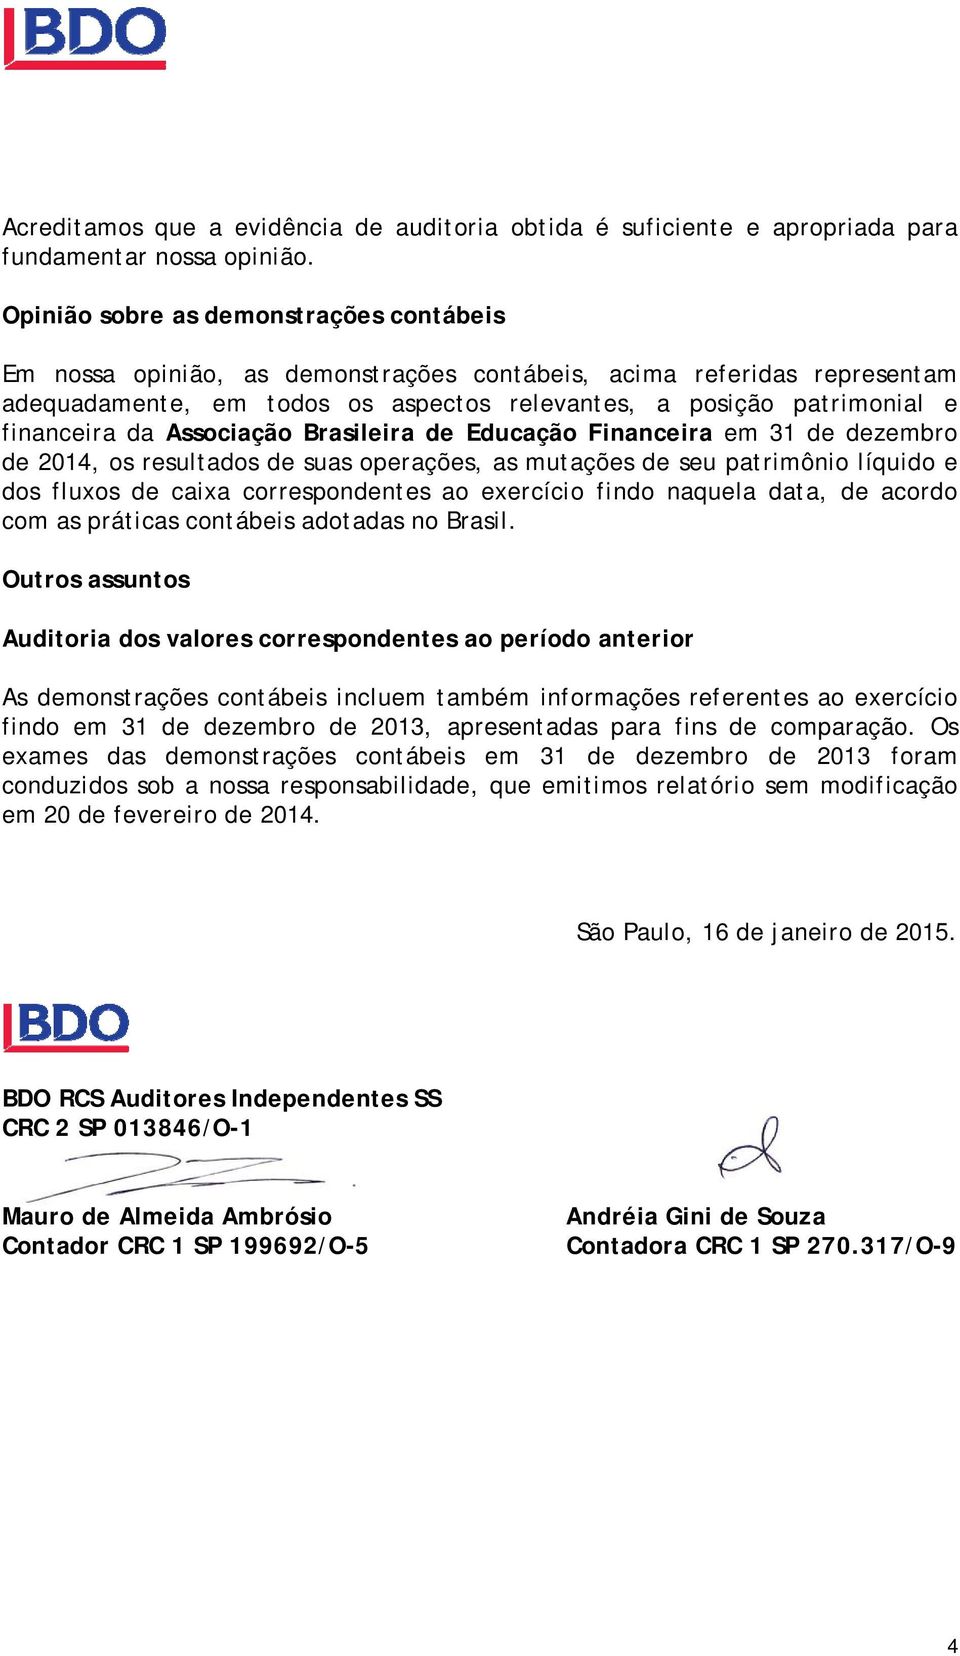 da Associação Brasileira de Educação Financeira em 31 de dezembro de 2014, os resultados de suas operações, as mutações de seu patrimônio líquido e dos fluxos de caixa correspondentes ao exercício